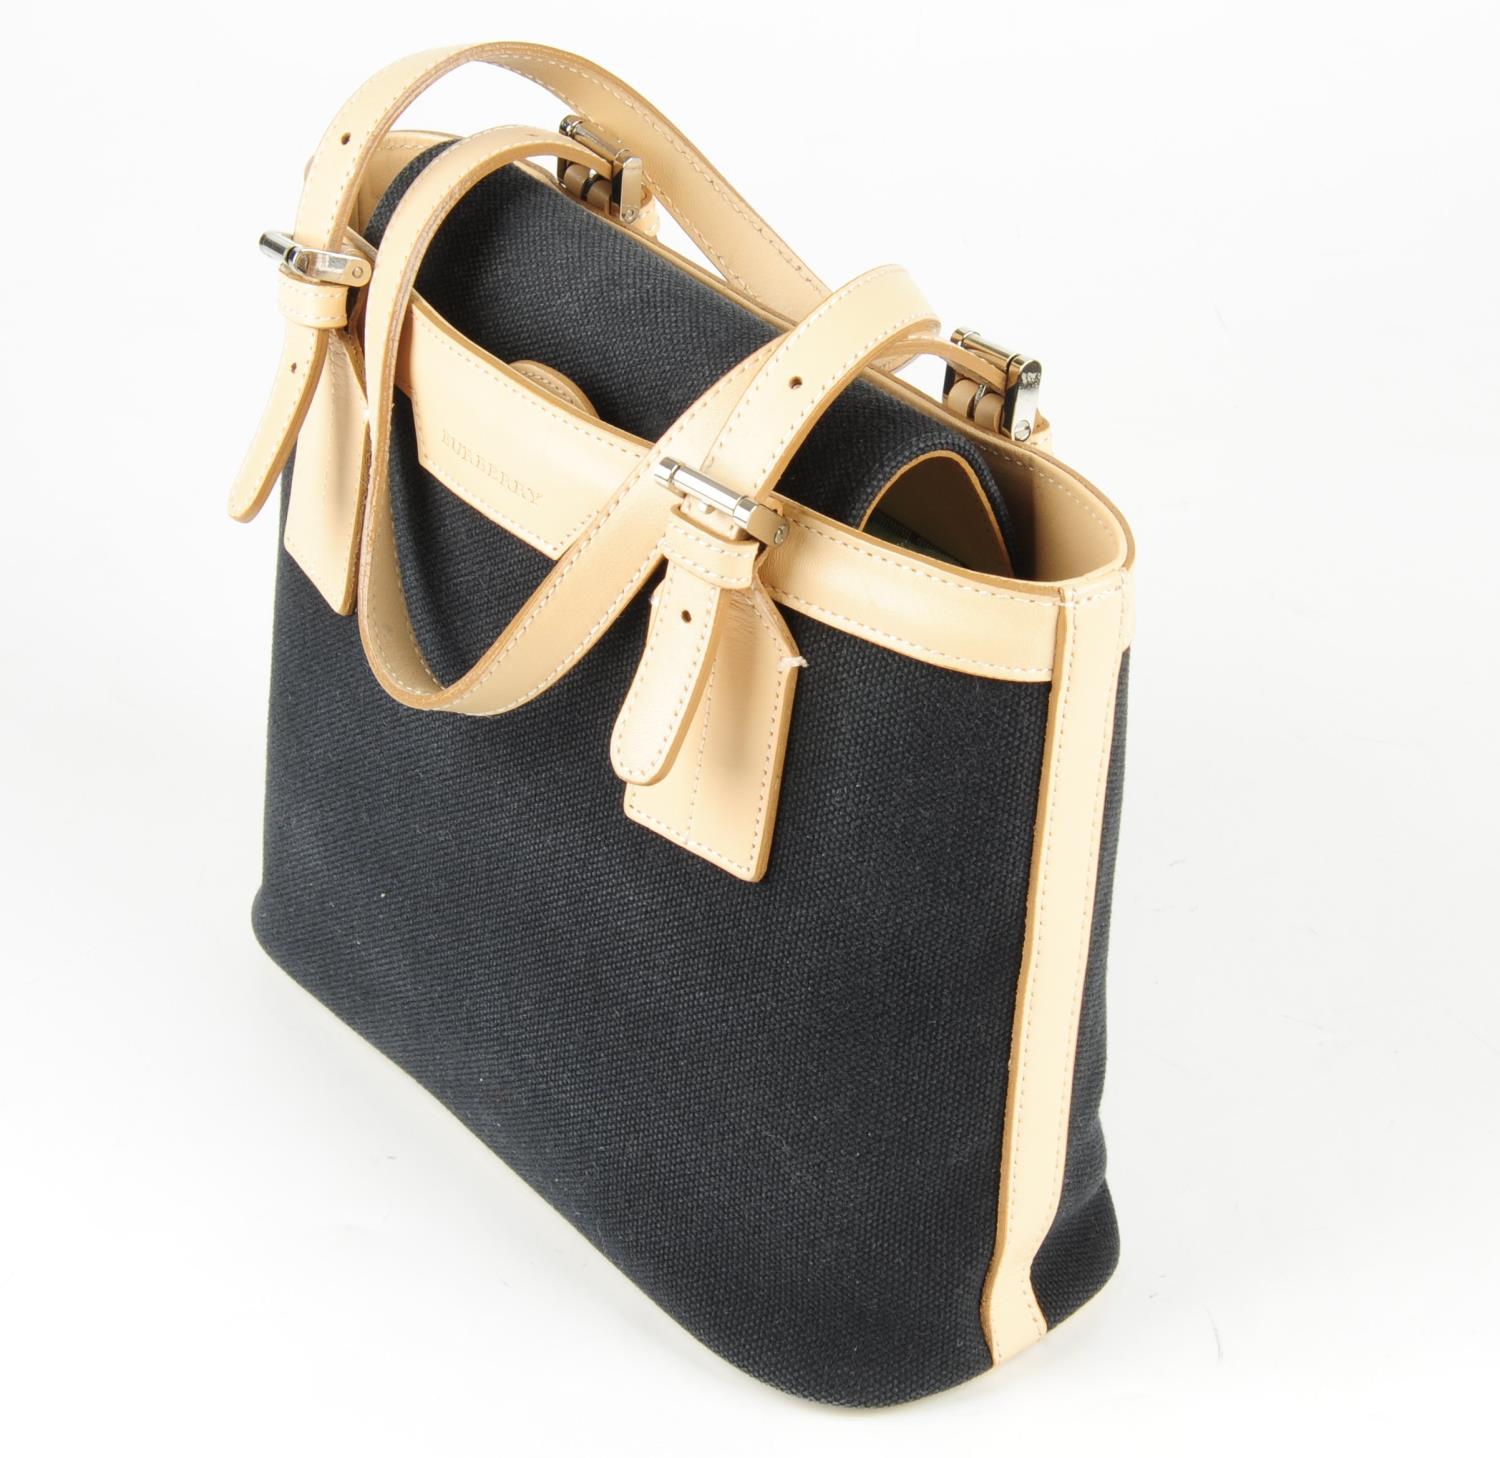 BURBERRY - a small canvas handbag. - Image 3 of 6